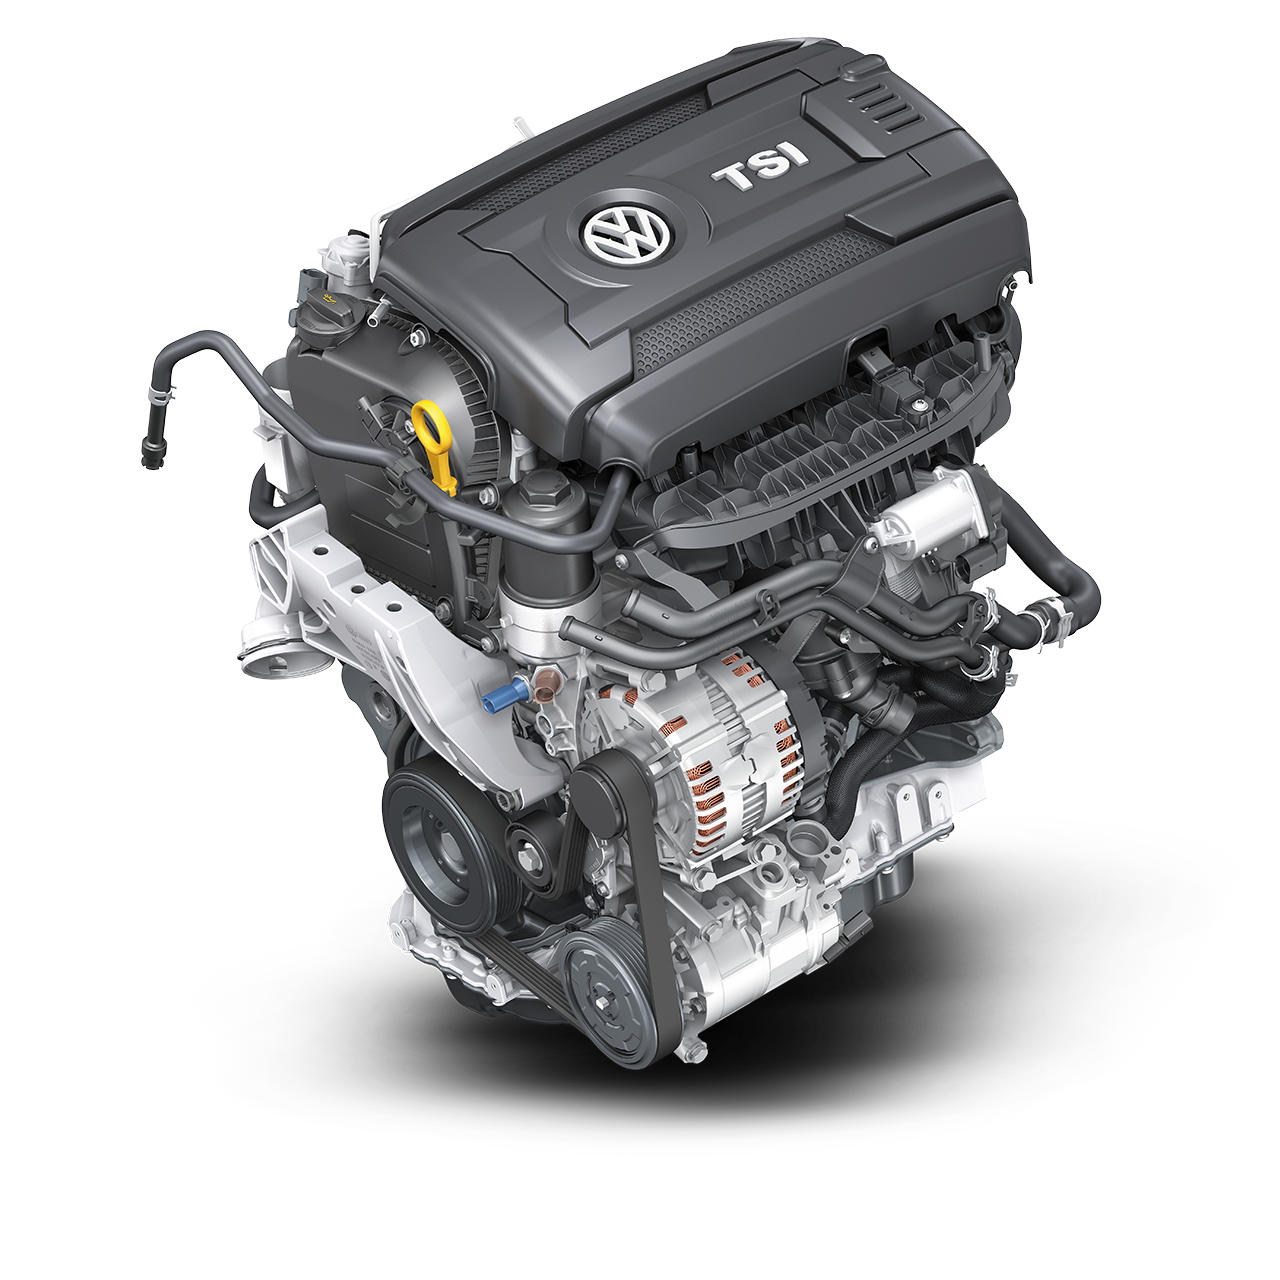 Двигатель Volkswagen TSI 2.0. 1.8 TSI. 1.8 TSI ea888. Двигатель 1.8 TSI 152 Л.С.